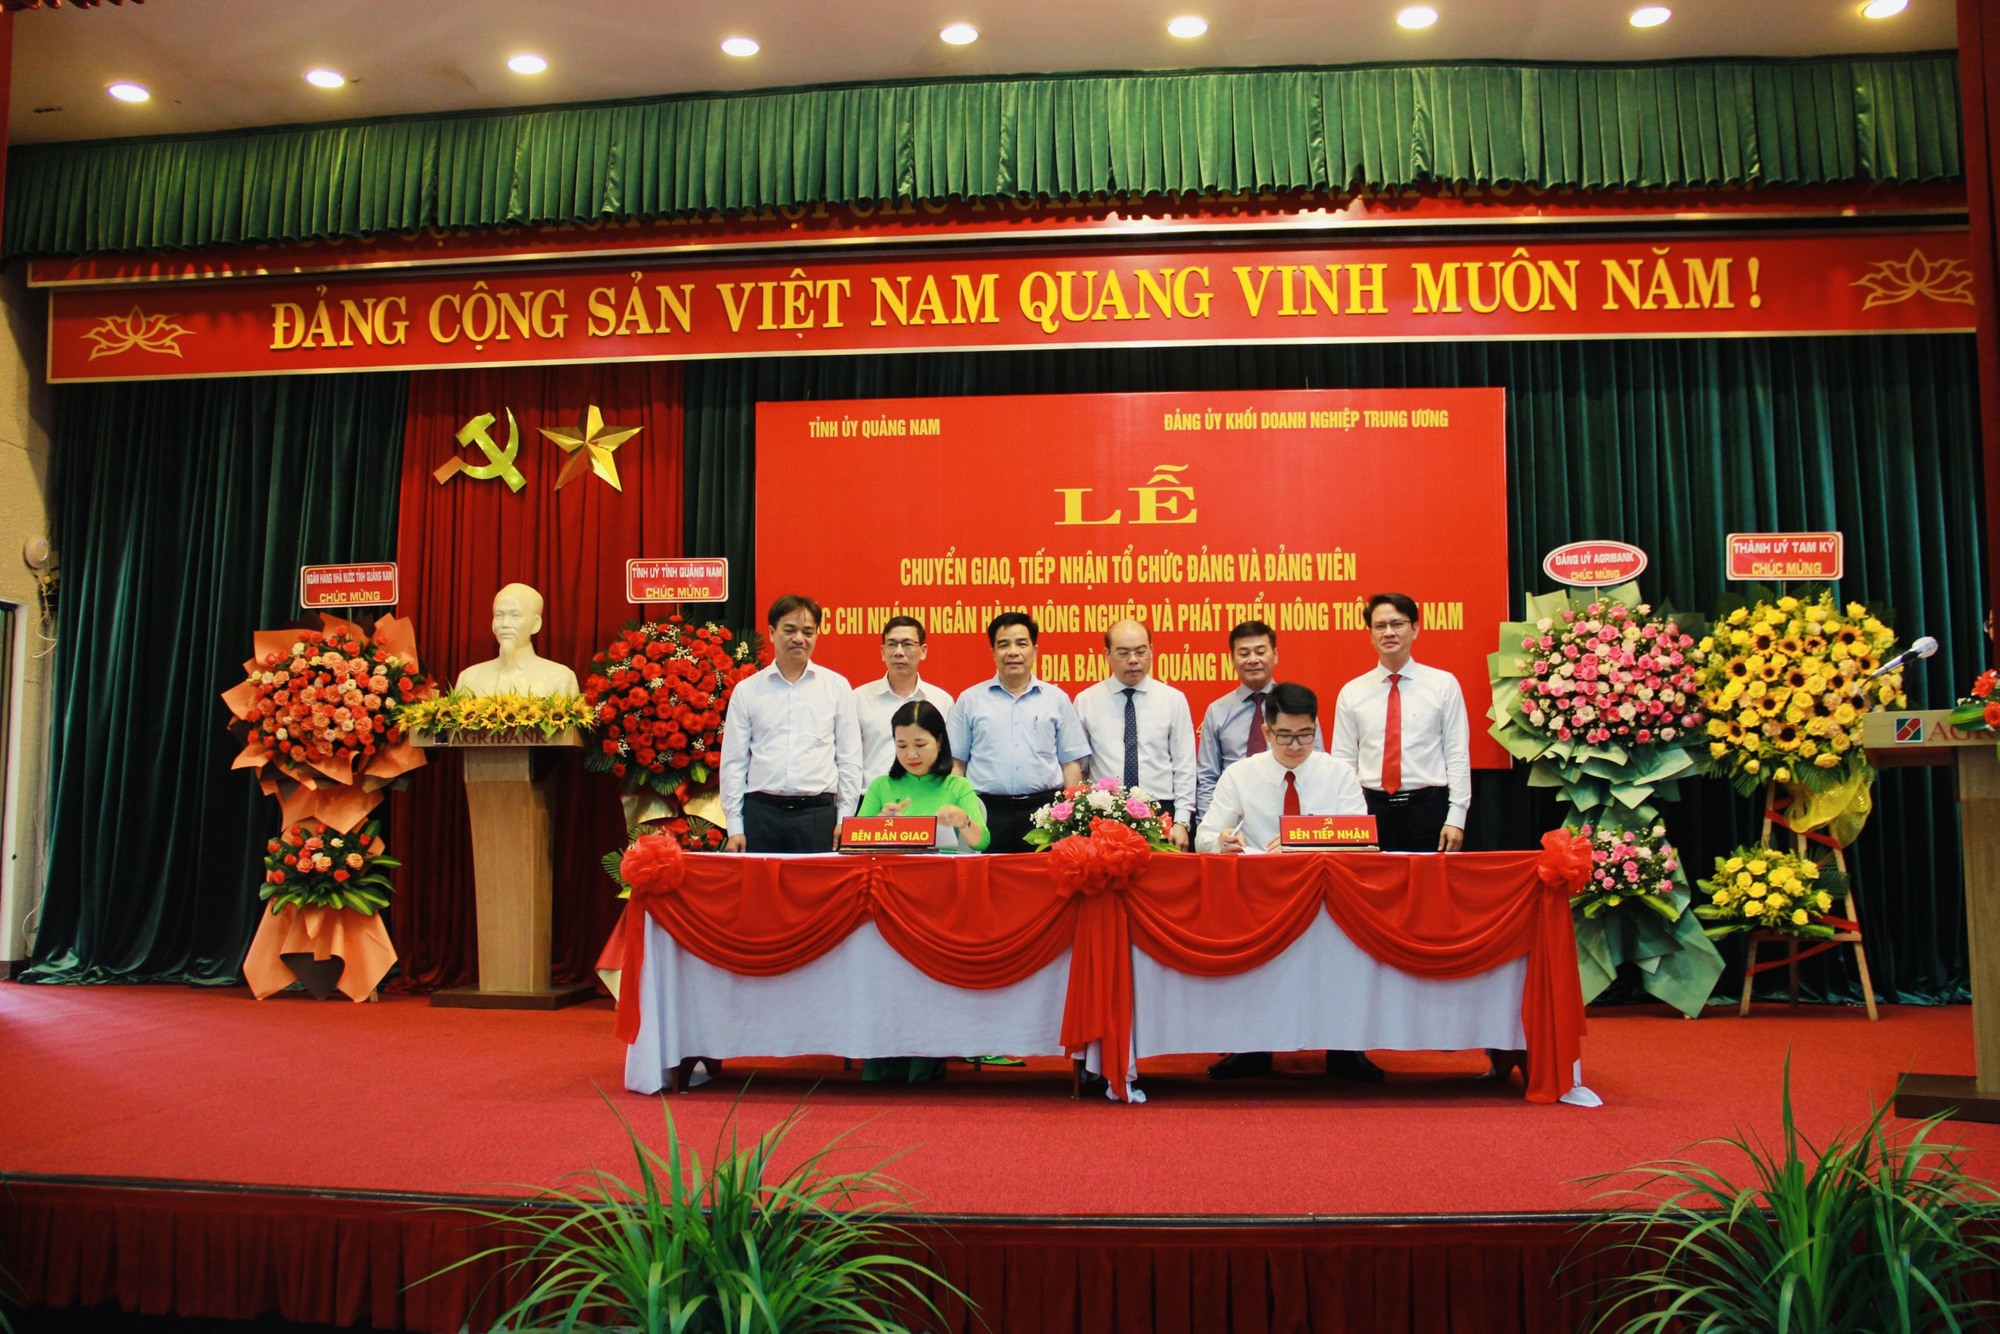 Lễ chuyển giao – tiếp nhận tổ chức đảng, đảng viên trong các Chi nhánh Agribank trên địa bàn tỉnh Quảng Nam - Ảnh 3.